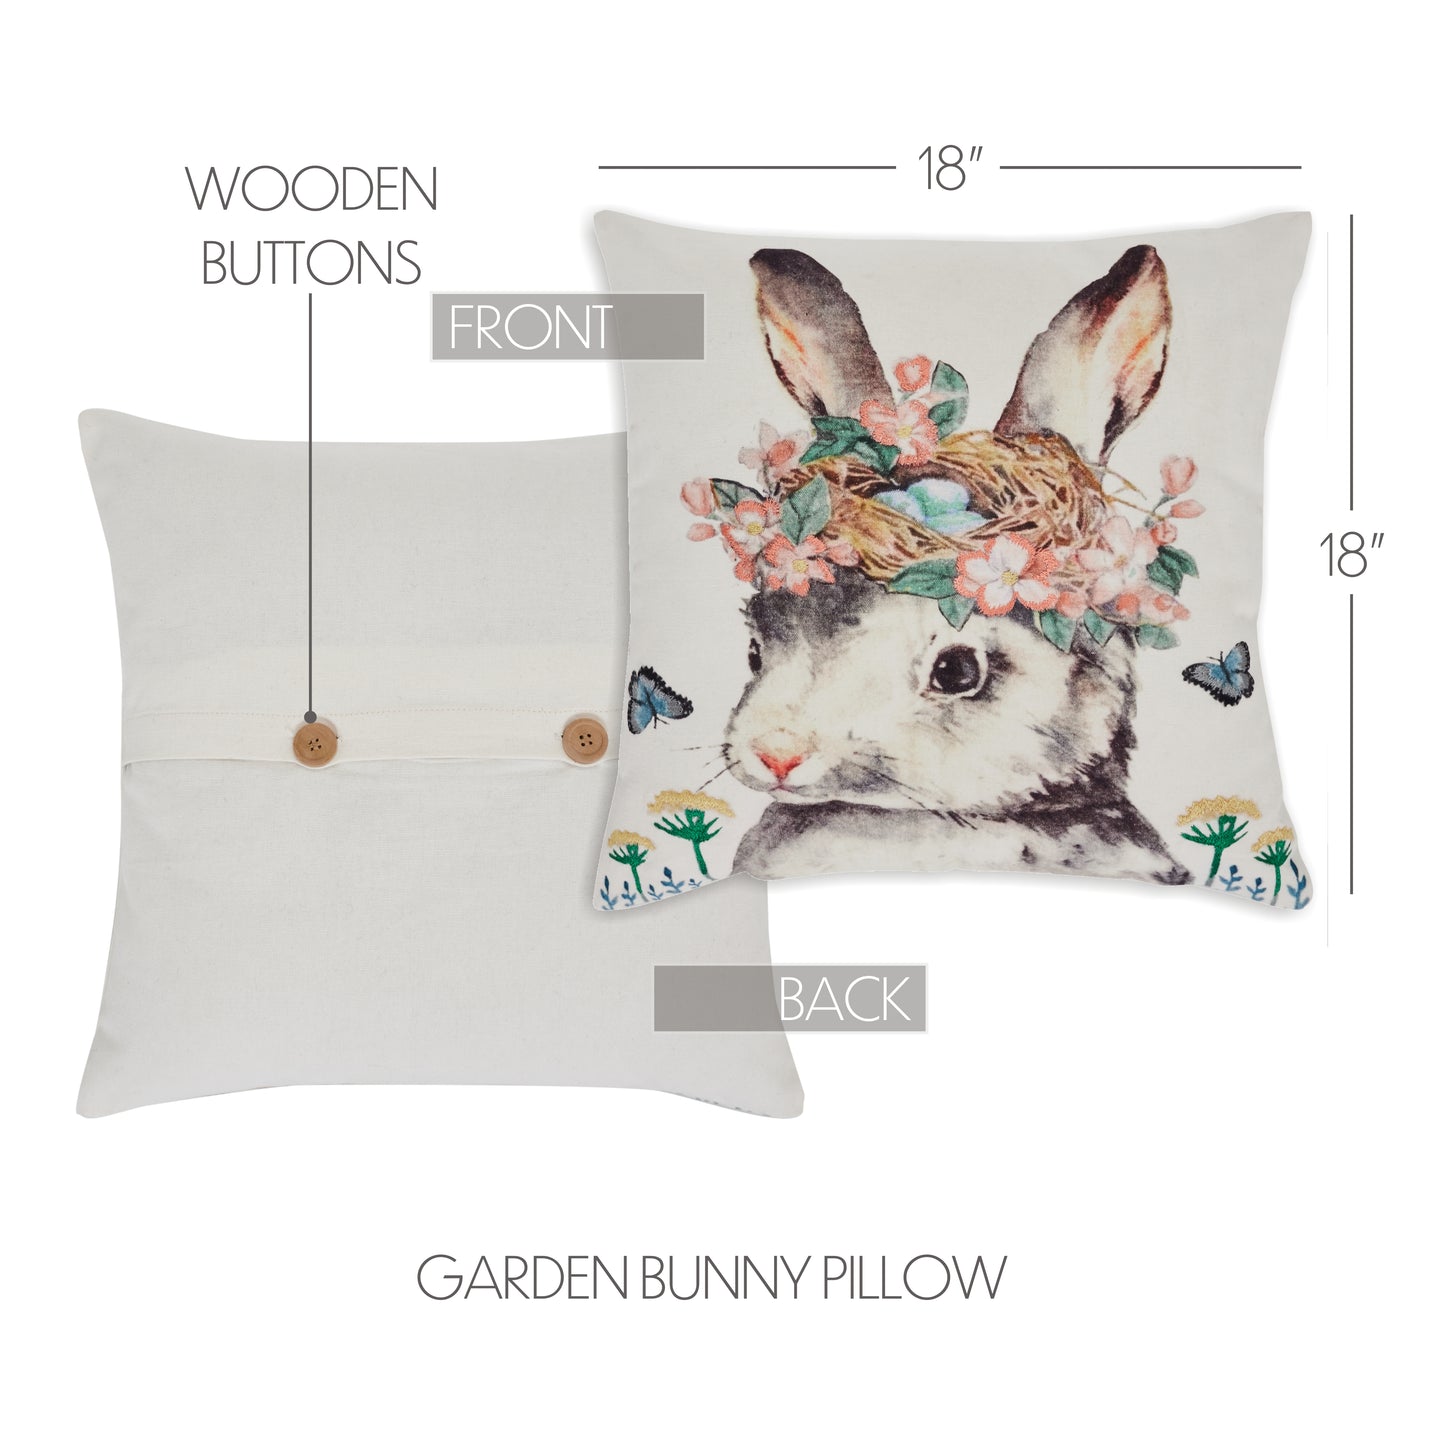 81151-Garden-Bunny-Pillow-18x18-image-1